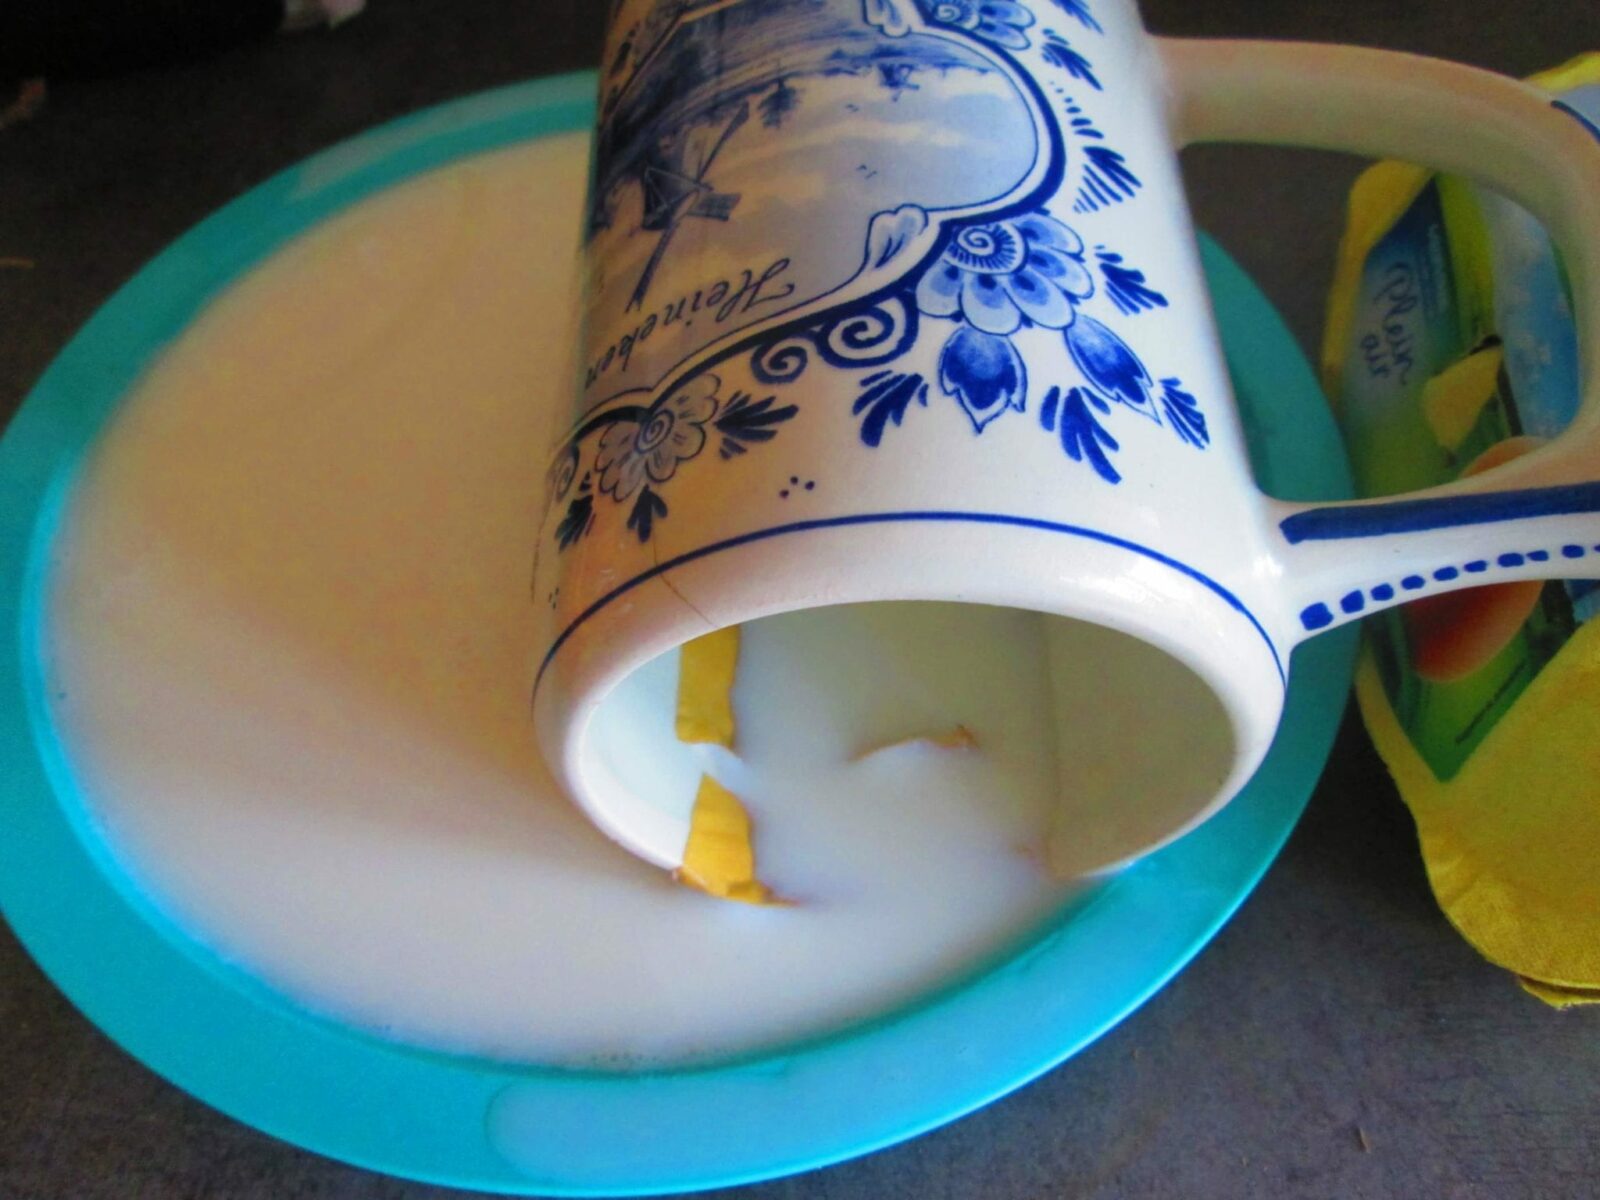 réparer de la porcelaine avec lait - tremper